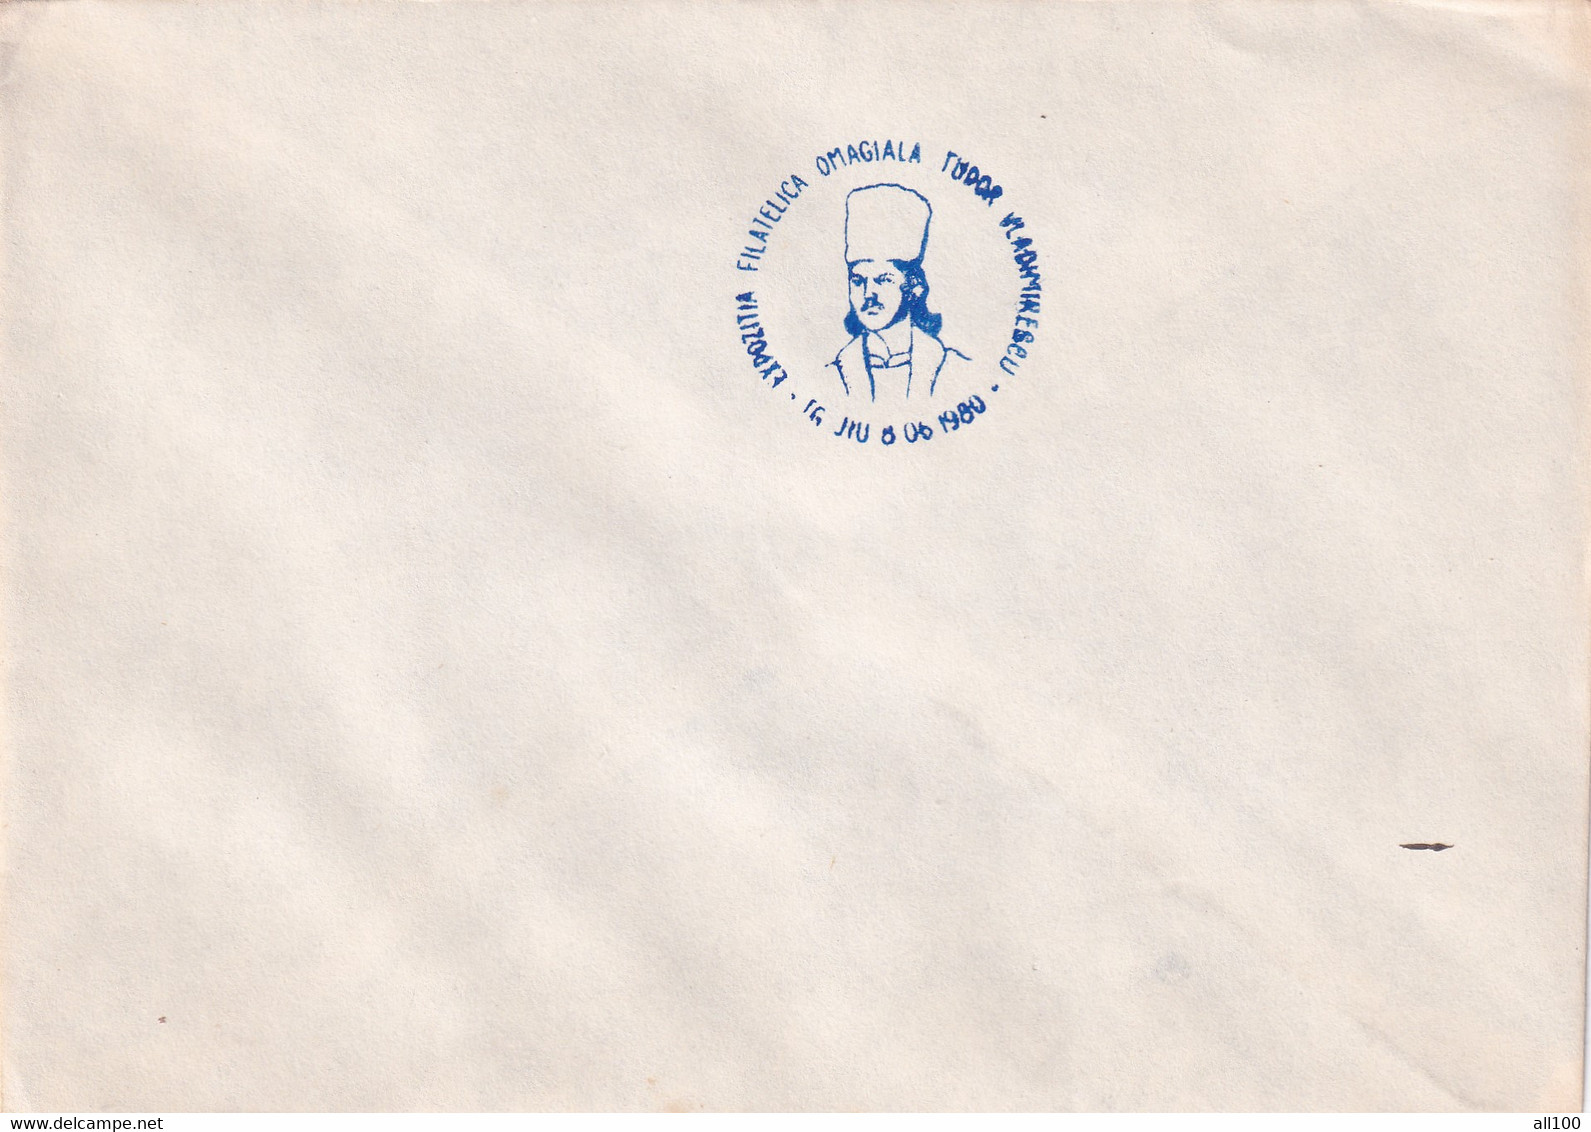 A19364 - EXPOZITIA FILATELICA OMAGIALA TUDOR VLADIMIRESCU COVER ENVELOPE UNUSED 1980 REPUBLICA SOCIALISTA ROMANIA RSR - Briefe U. Dokumente